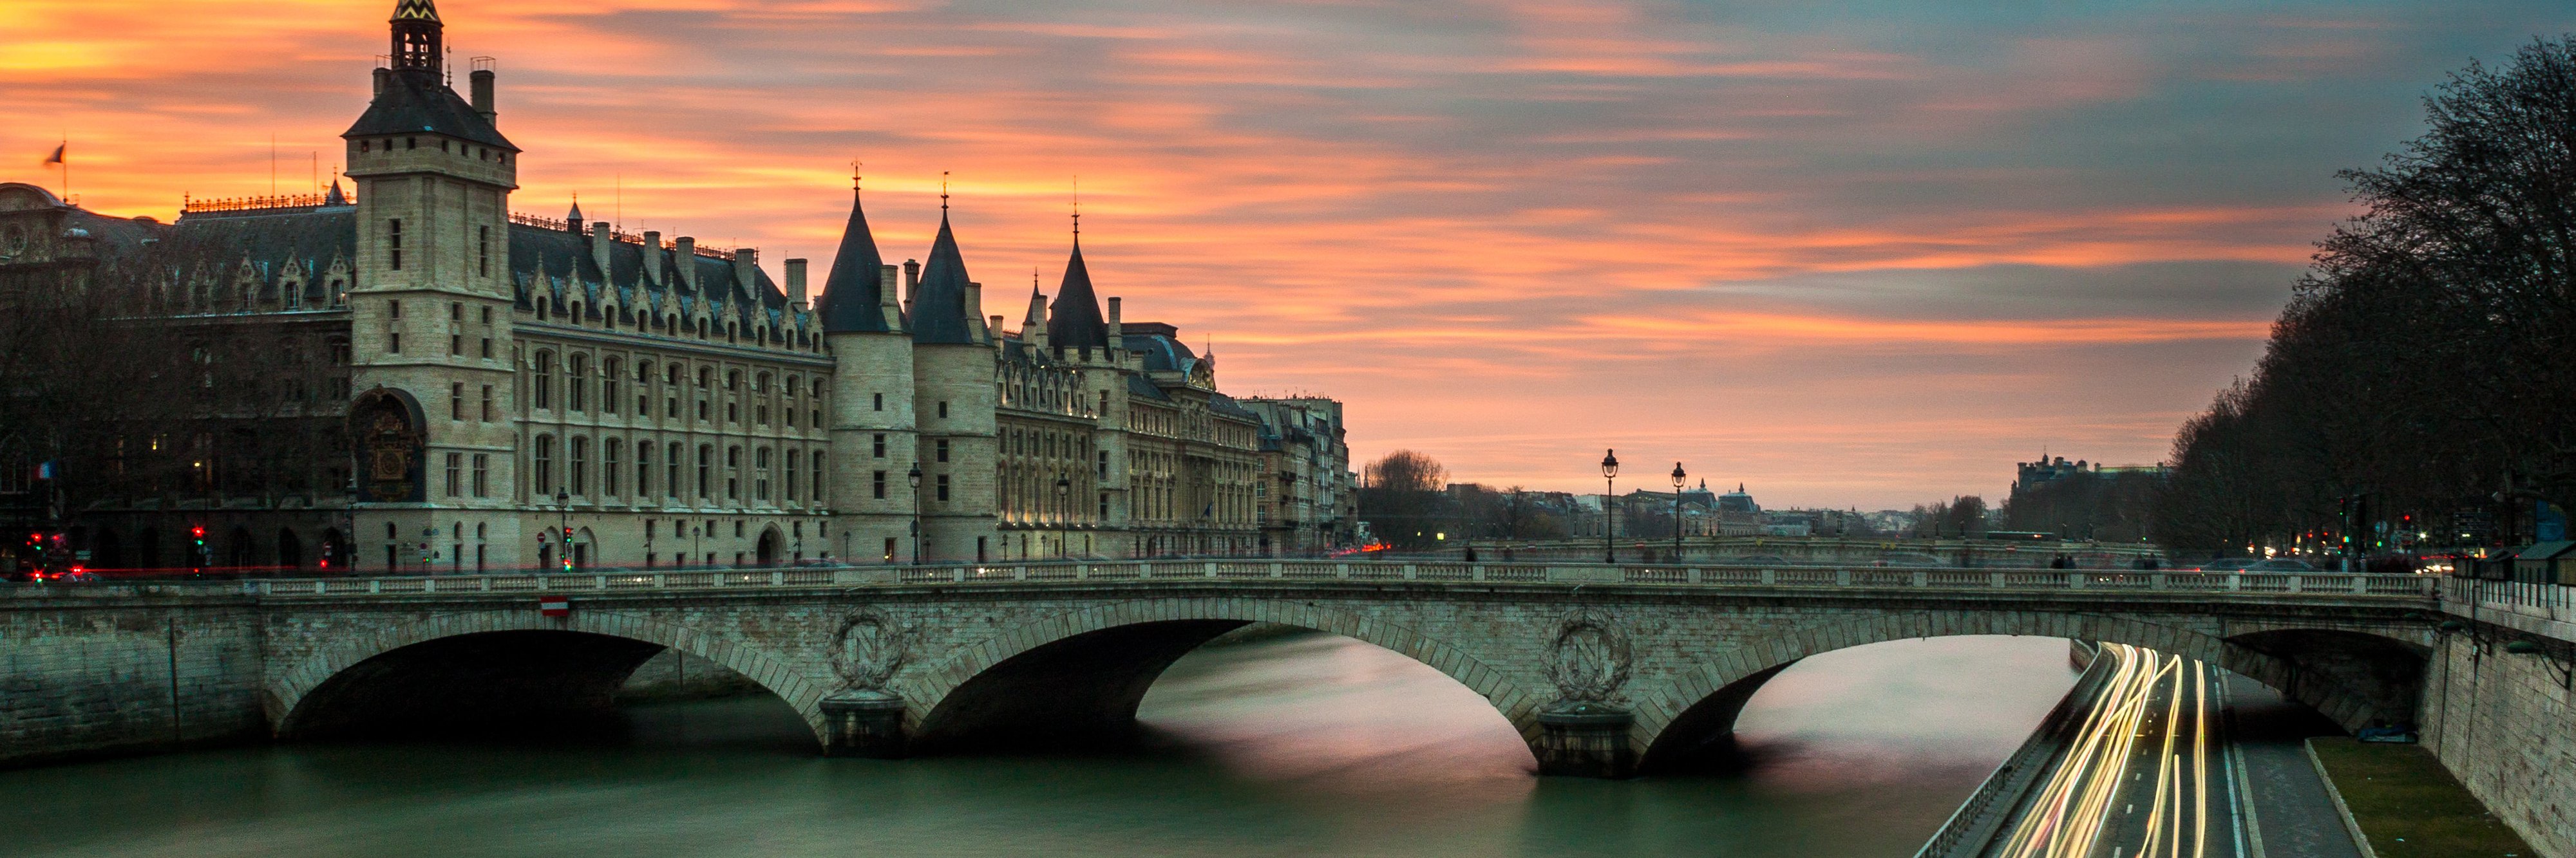 Sunset over the Loire River, Paris, France